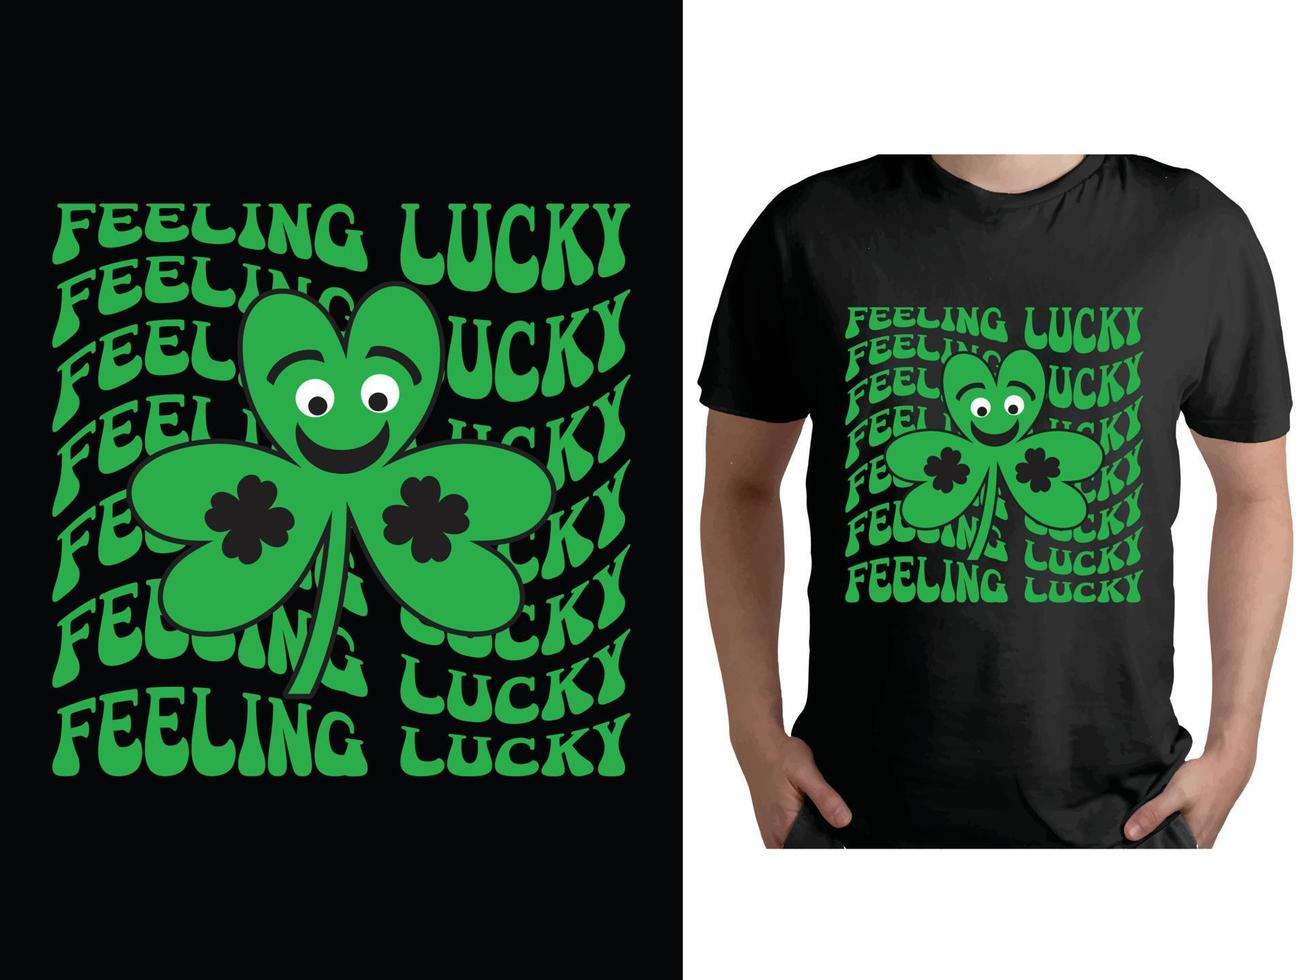 st. Patricks dag t-shirt design, helgon Patricks dag skjorta, tur- irländsk skjorta vektor